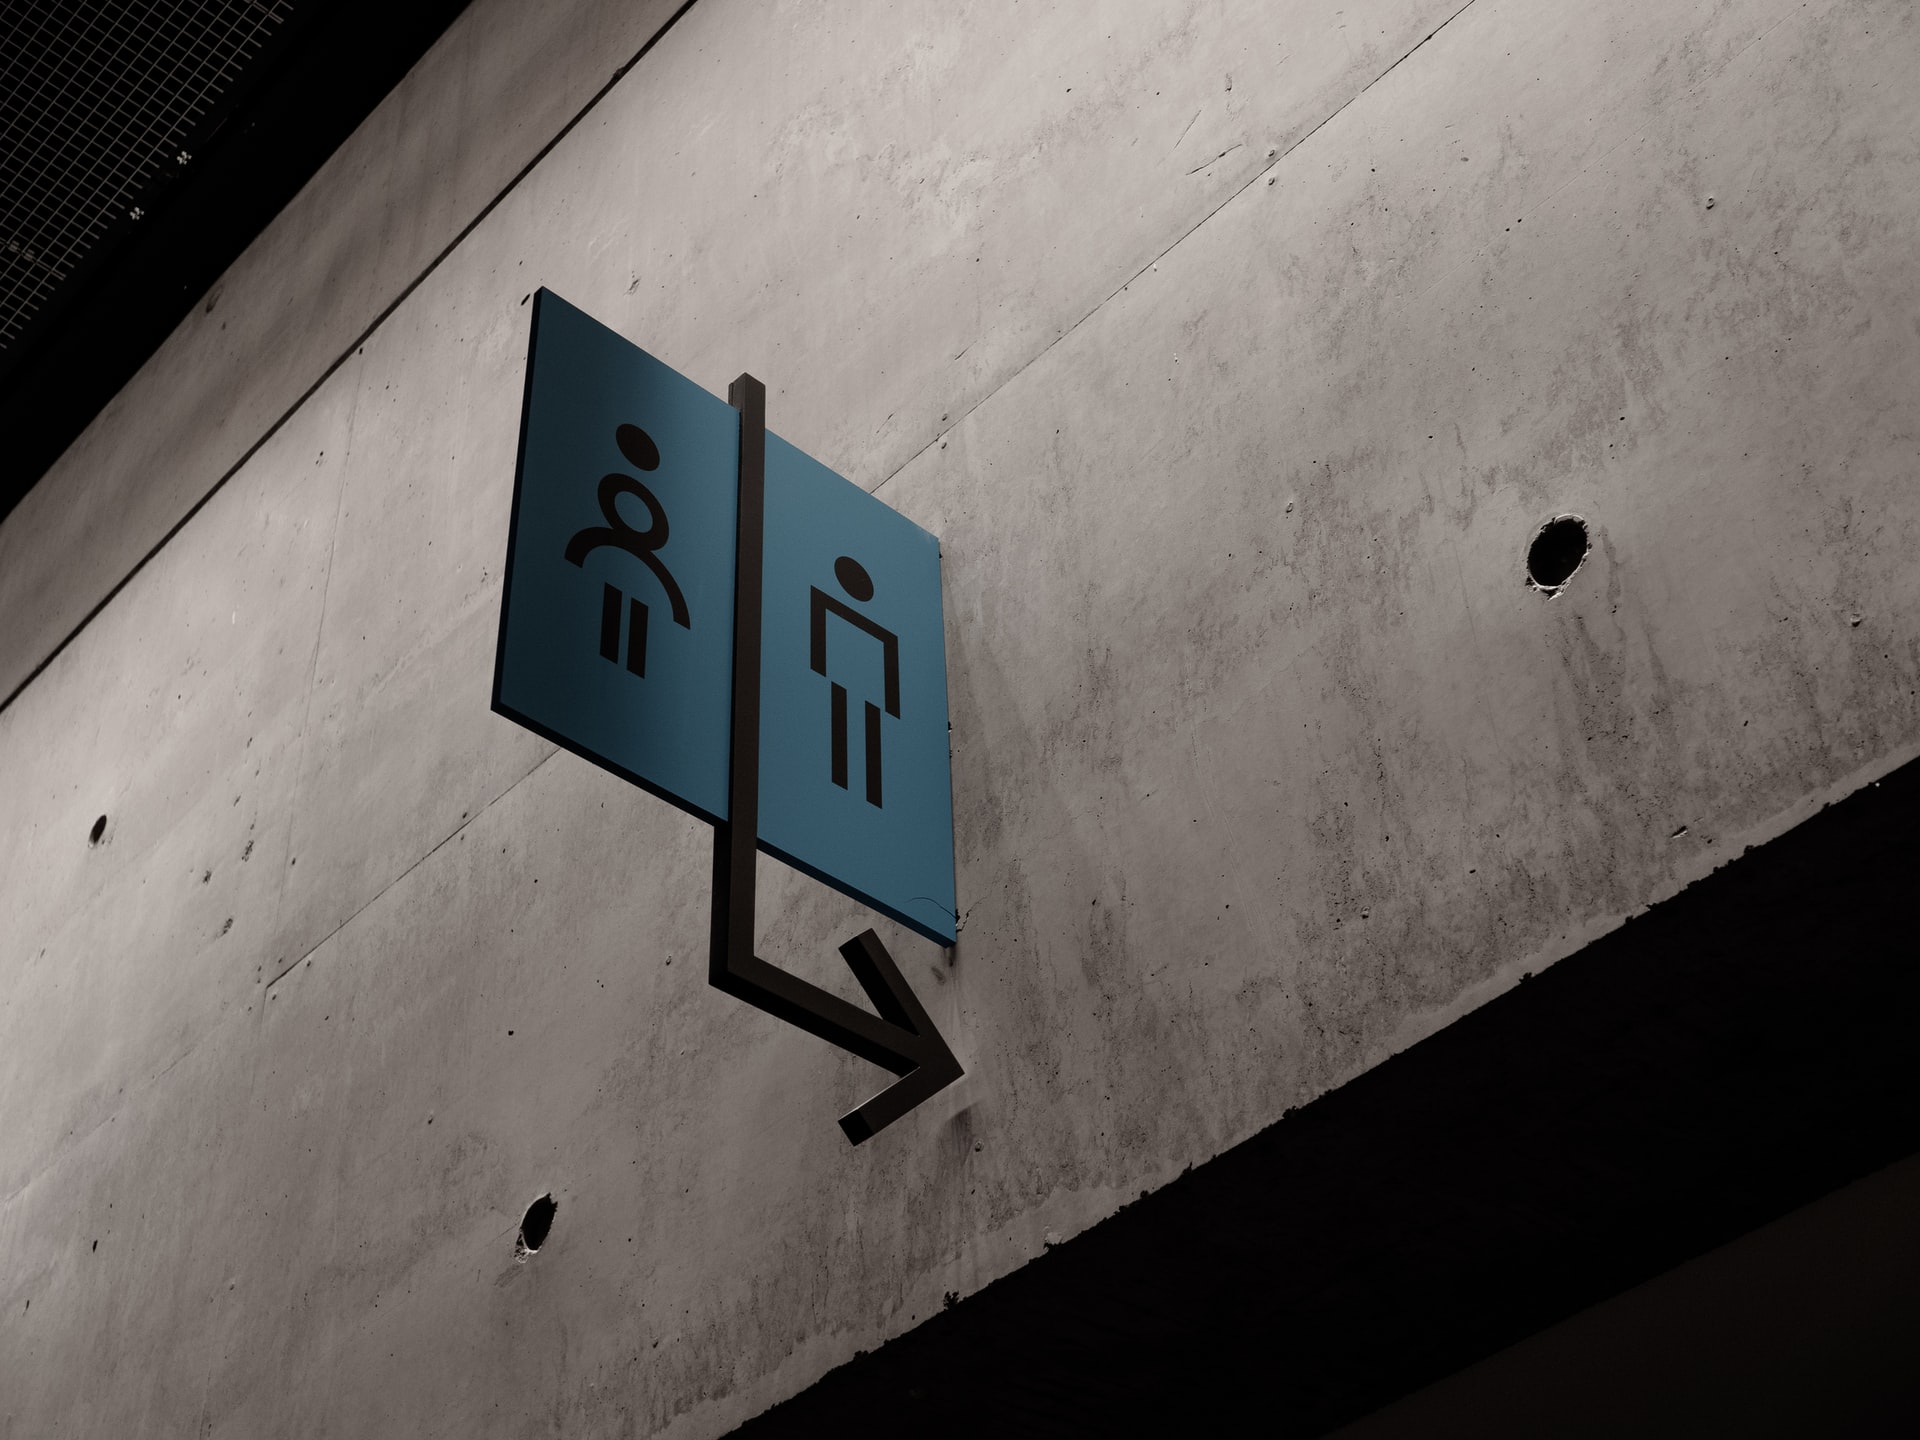 Łazienki publiczne – w co powinny być wyposażone?